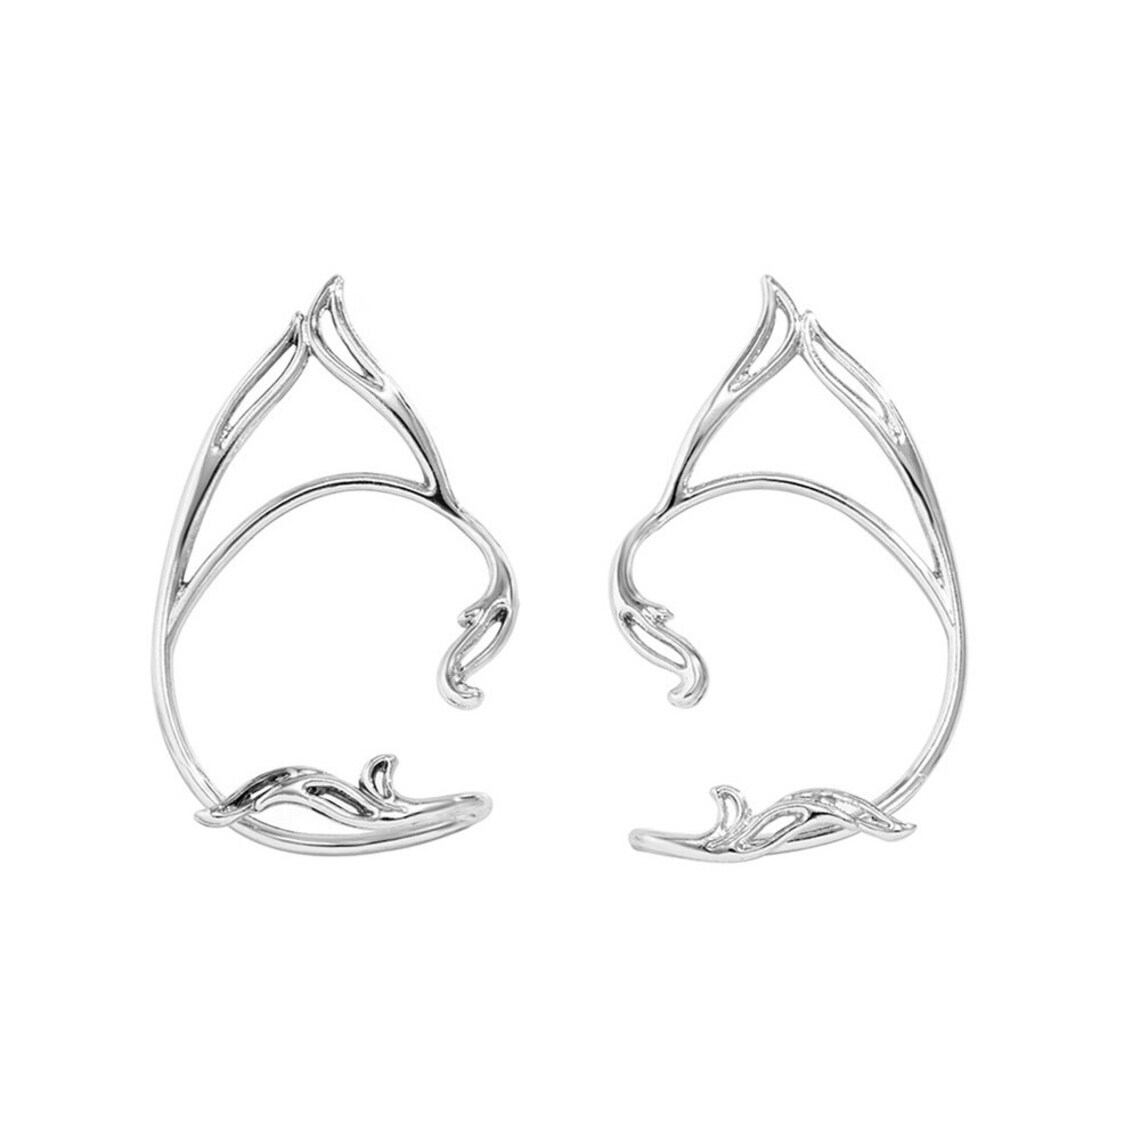 Elf studs/earrings -A pair